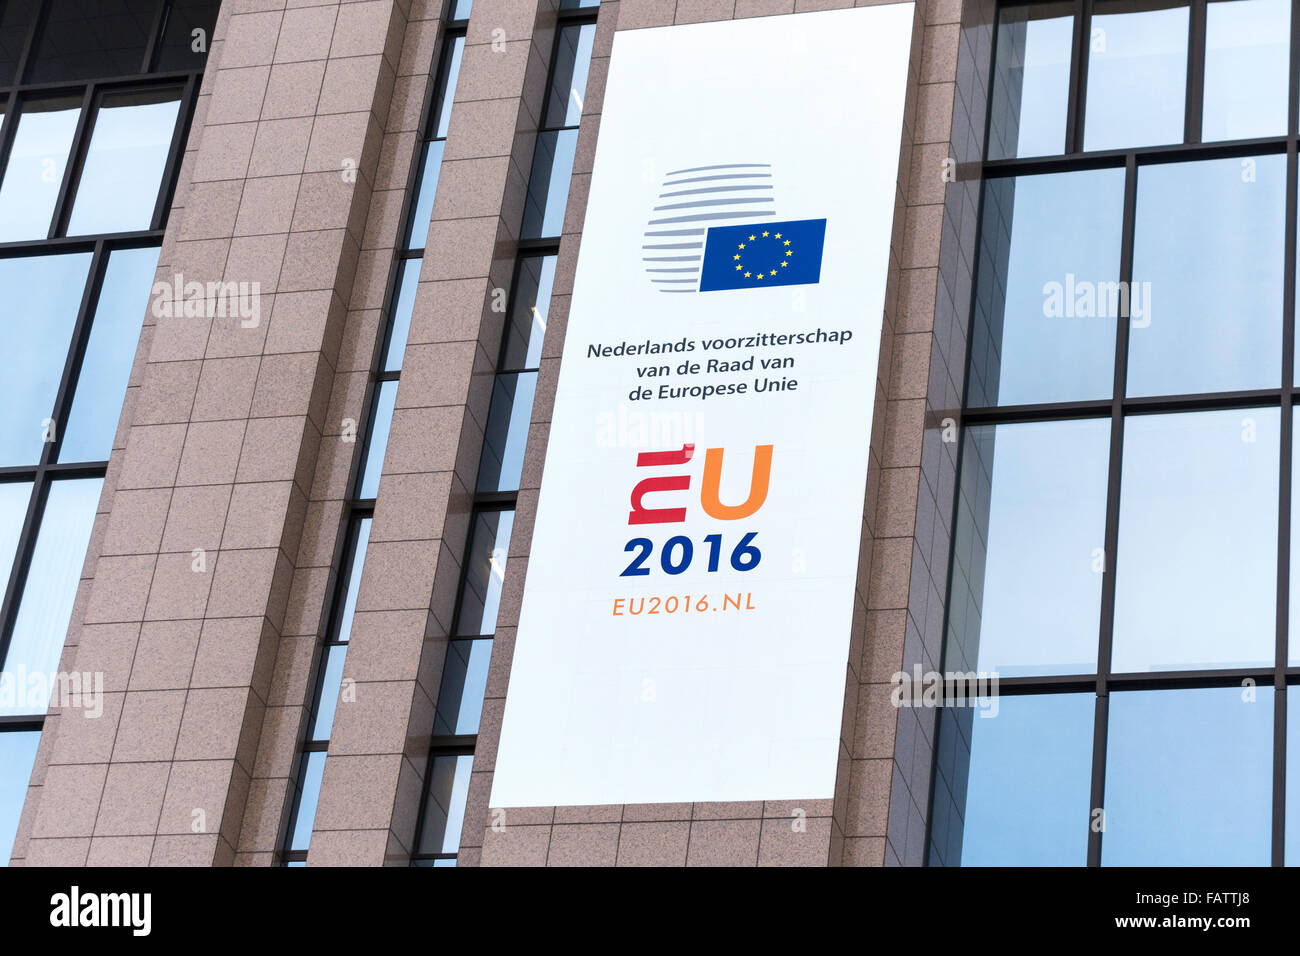 Brüssel niederländischen EU Rat Ratspräsidentschaft 2016 Logo Banner auf dem Europäischen Rat-Gebäude in Brüssel-Belgien am 1. Januar 2016. Stockfoto